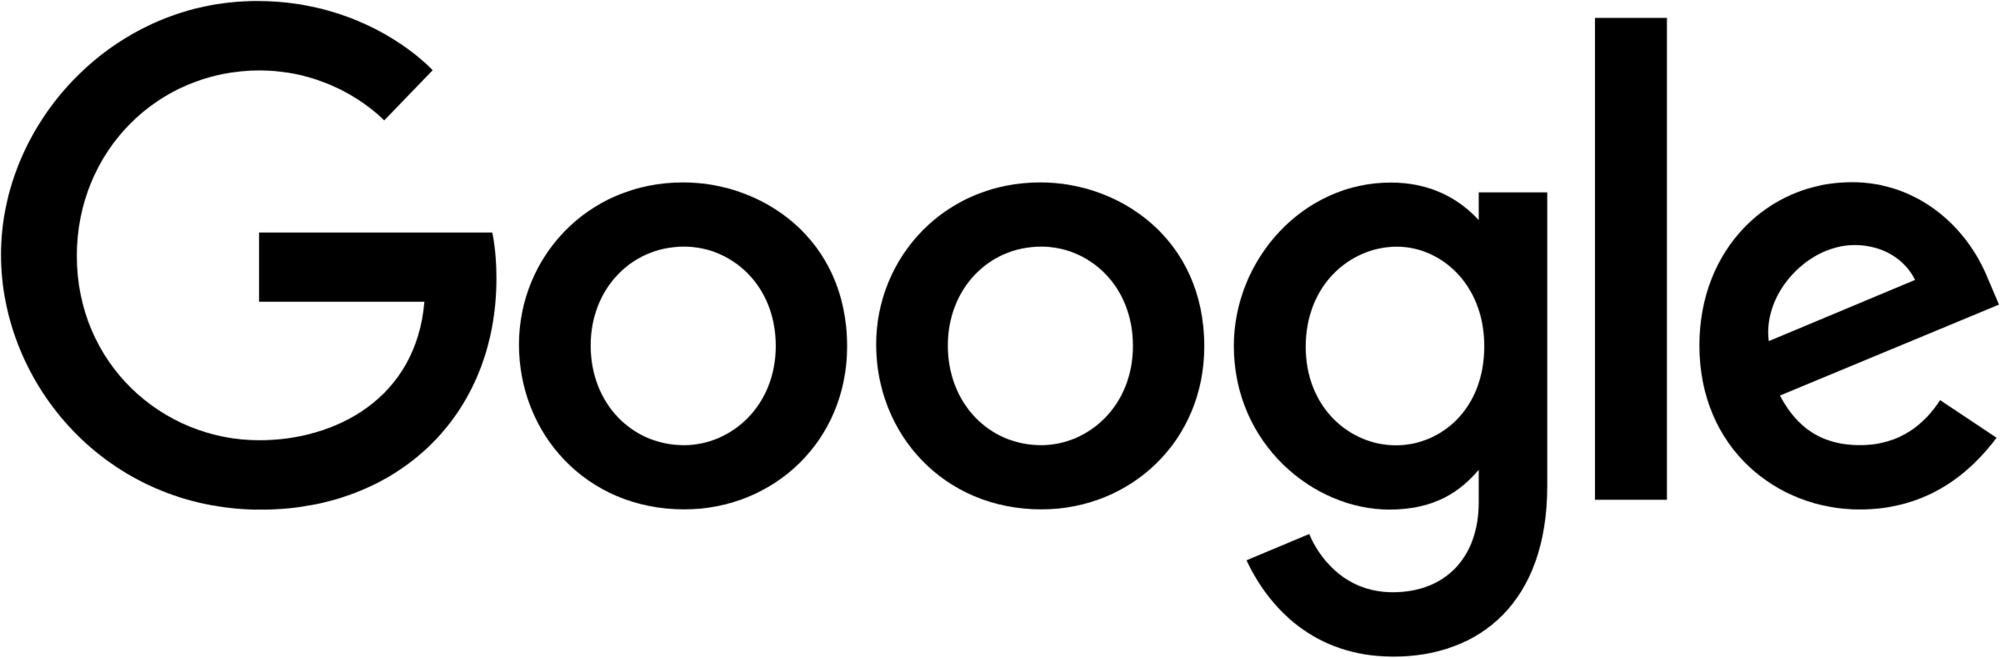 Google-logo bw.png